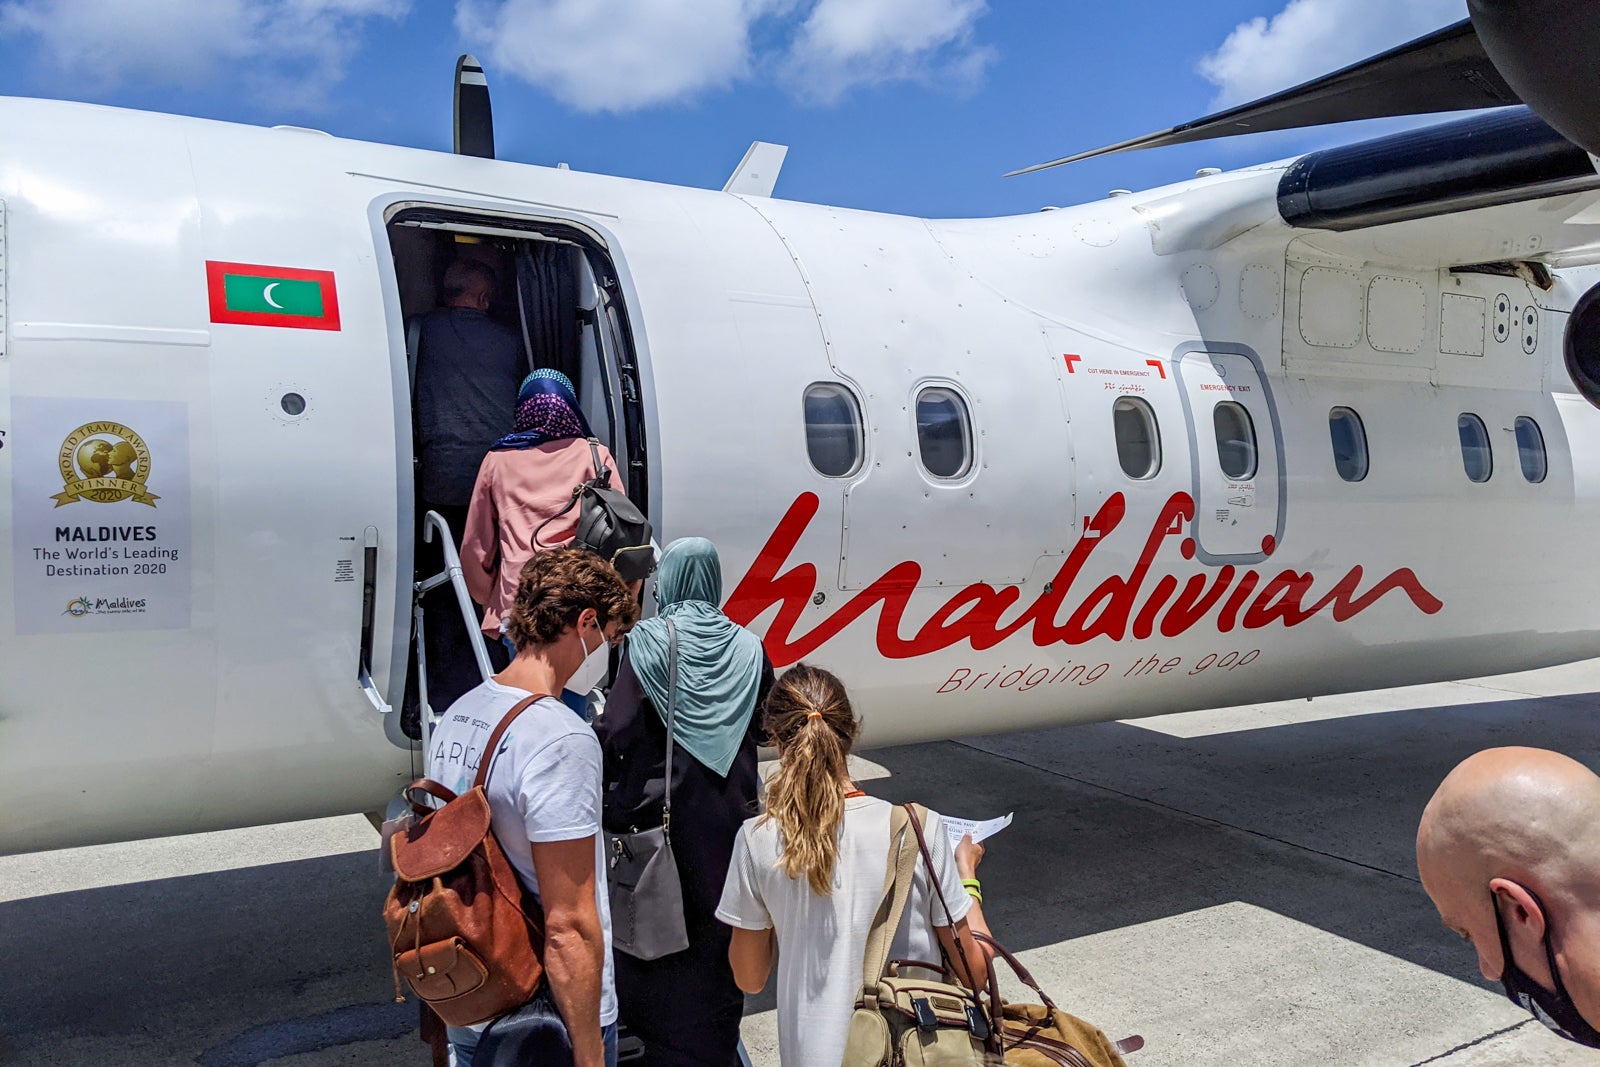 Boarding Maldivian flight